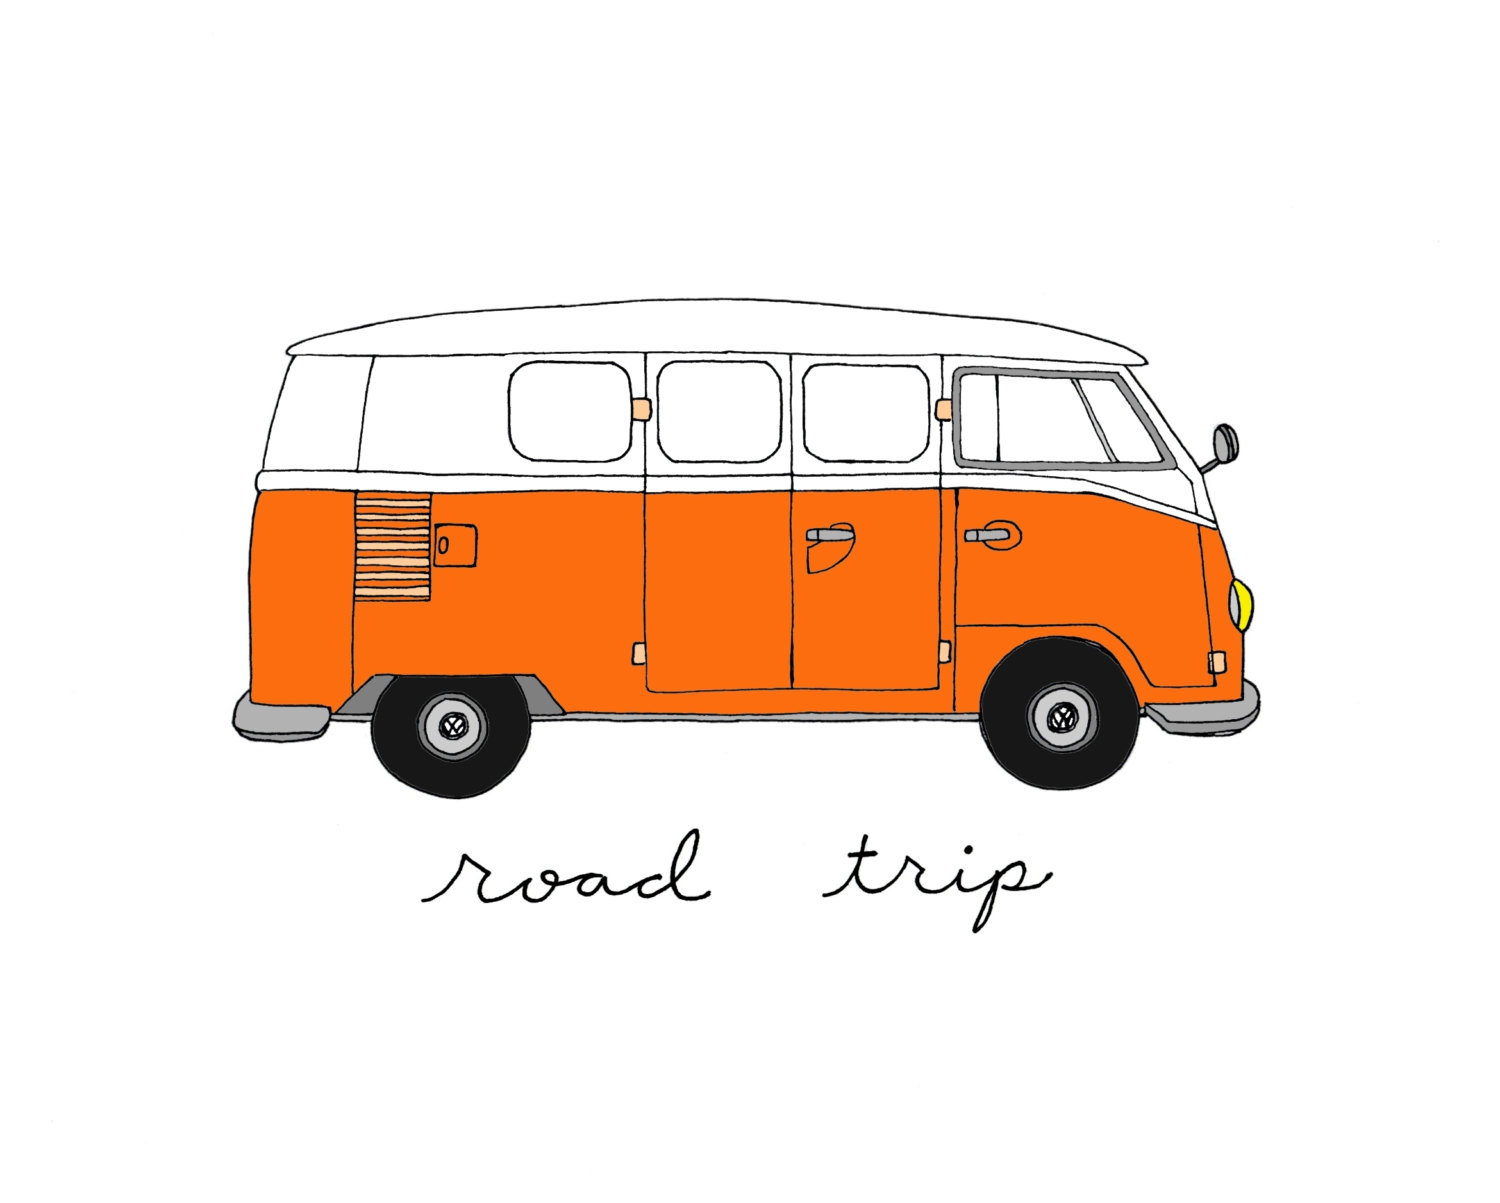 Free Volkswagen Van Cliparts, Download Free Clip Art, Free ...